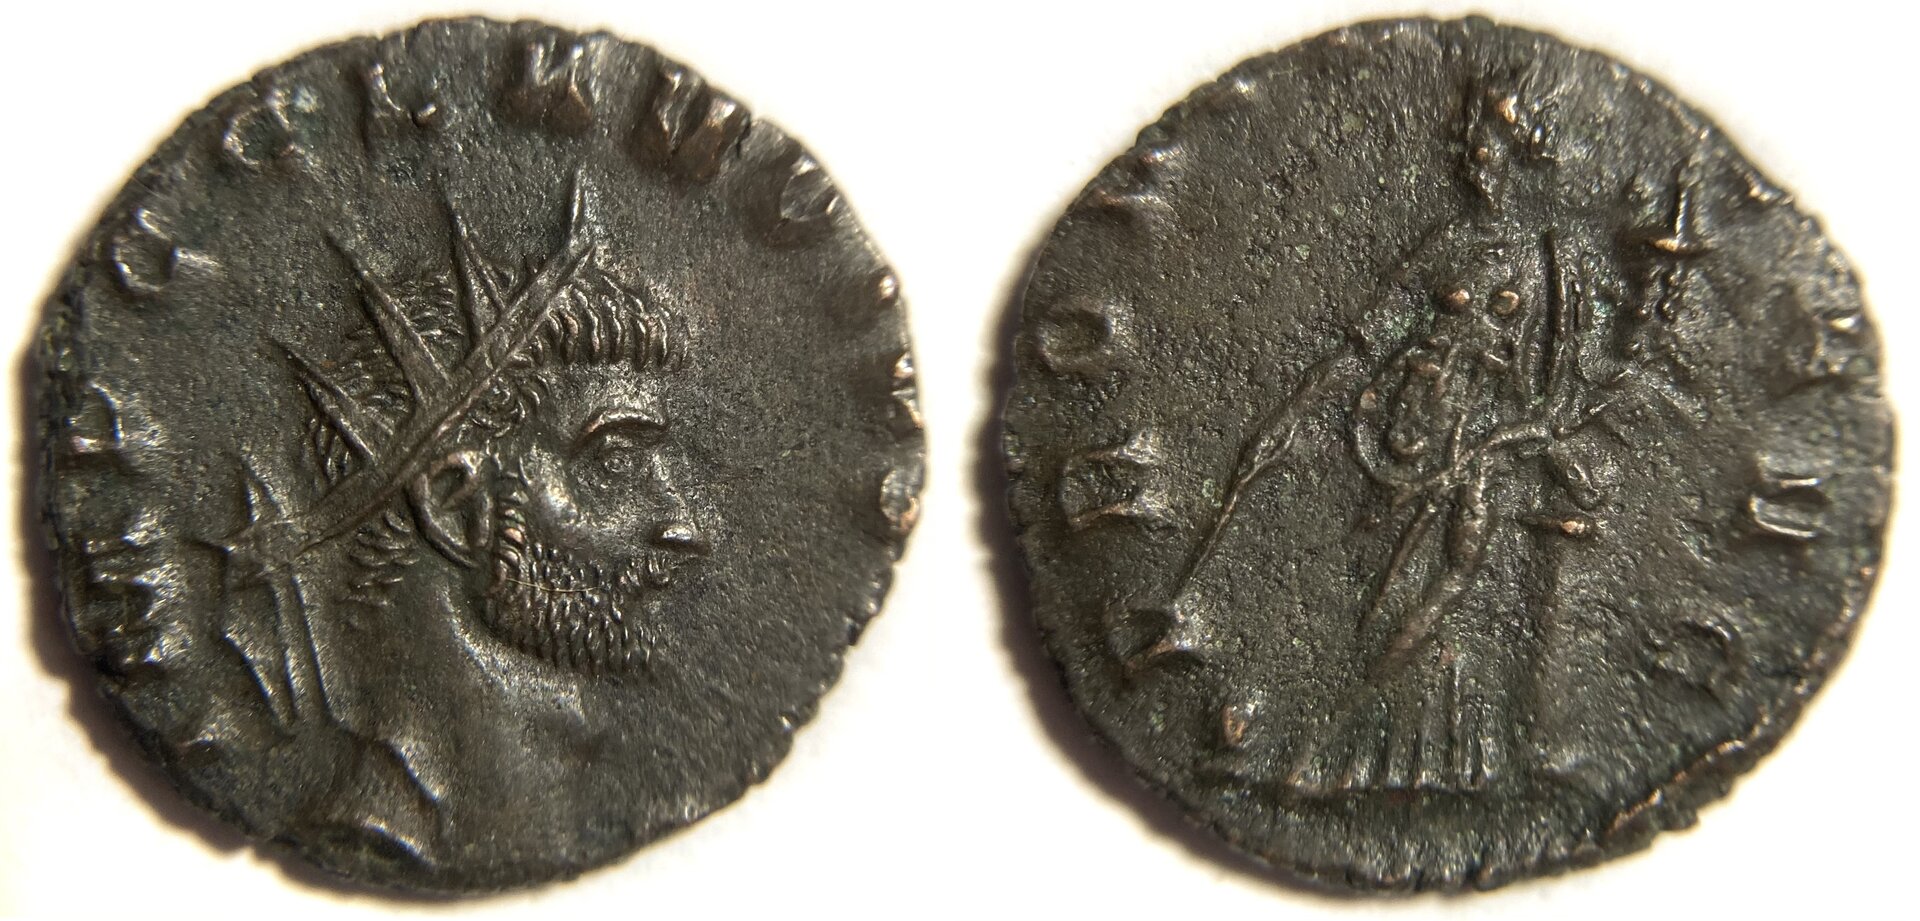 Claudius II RIC Rome 92.JPG